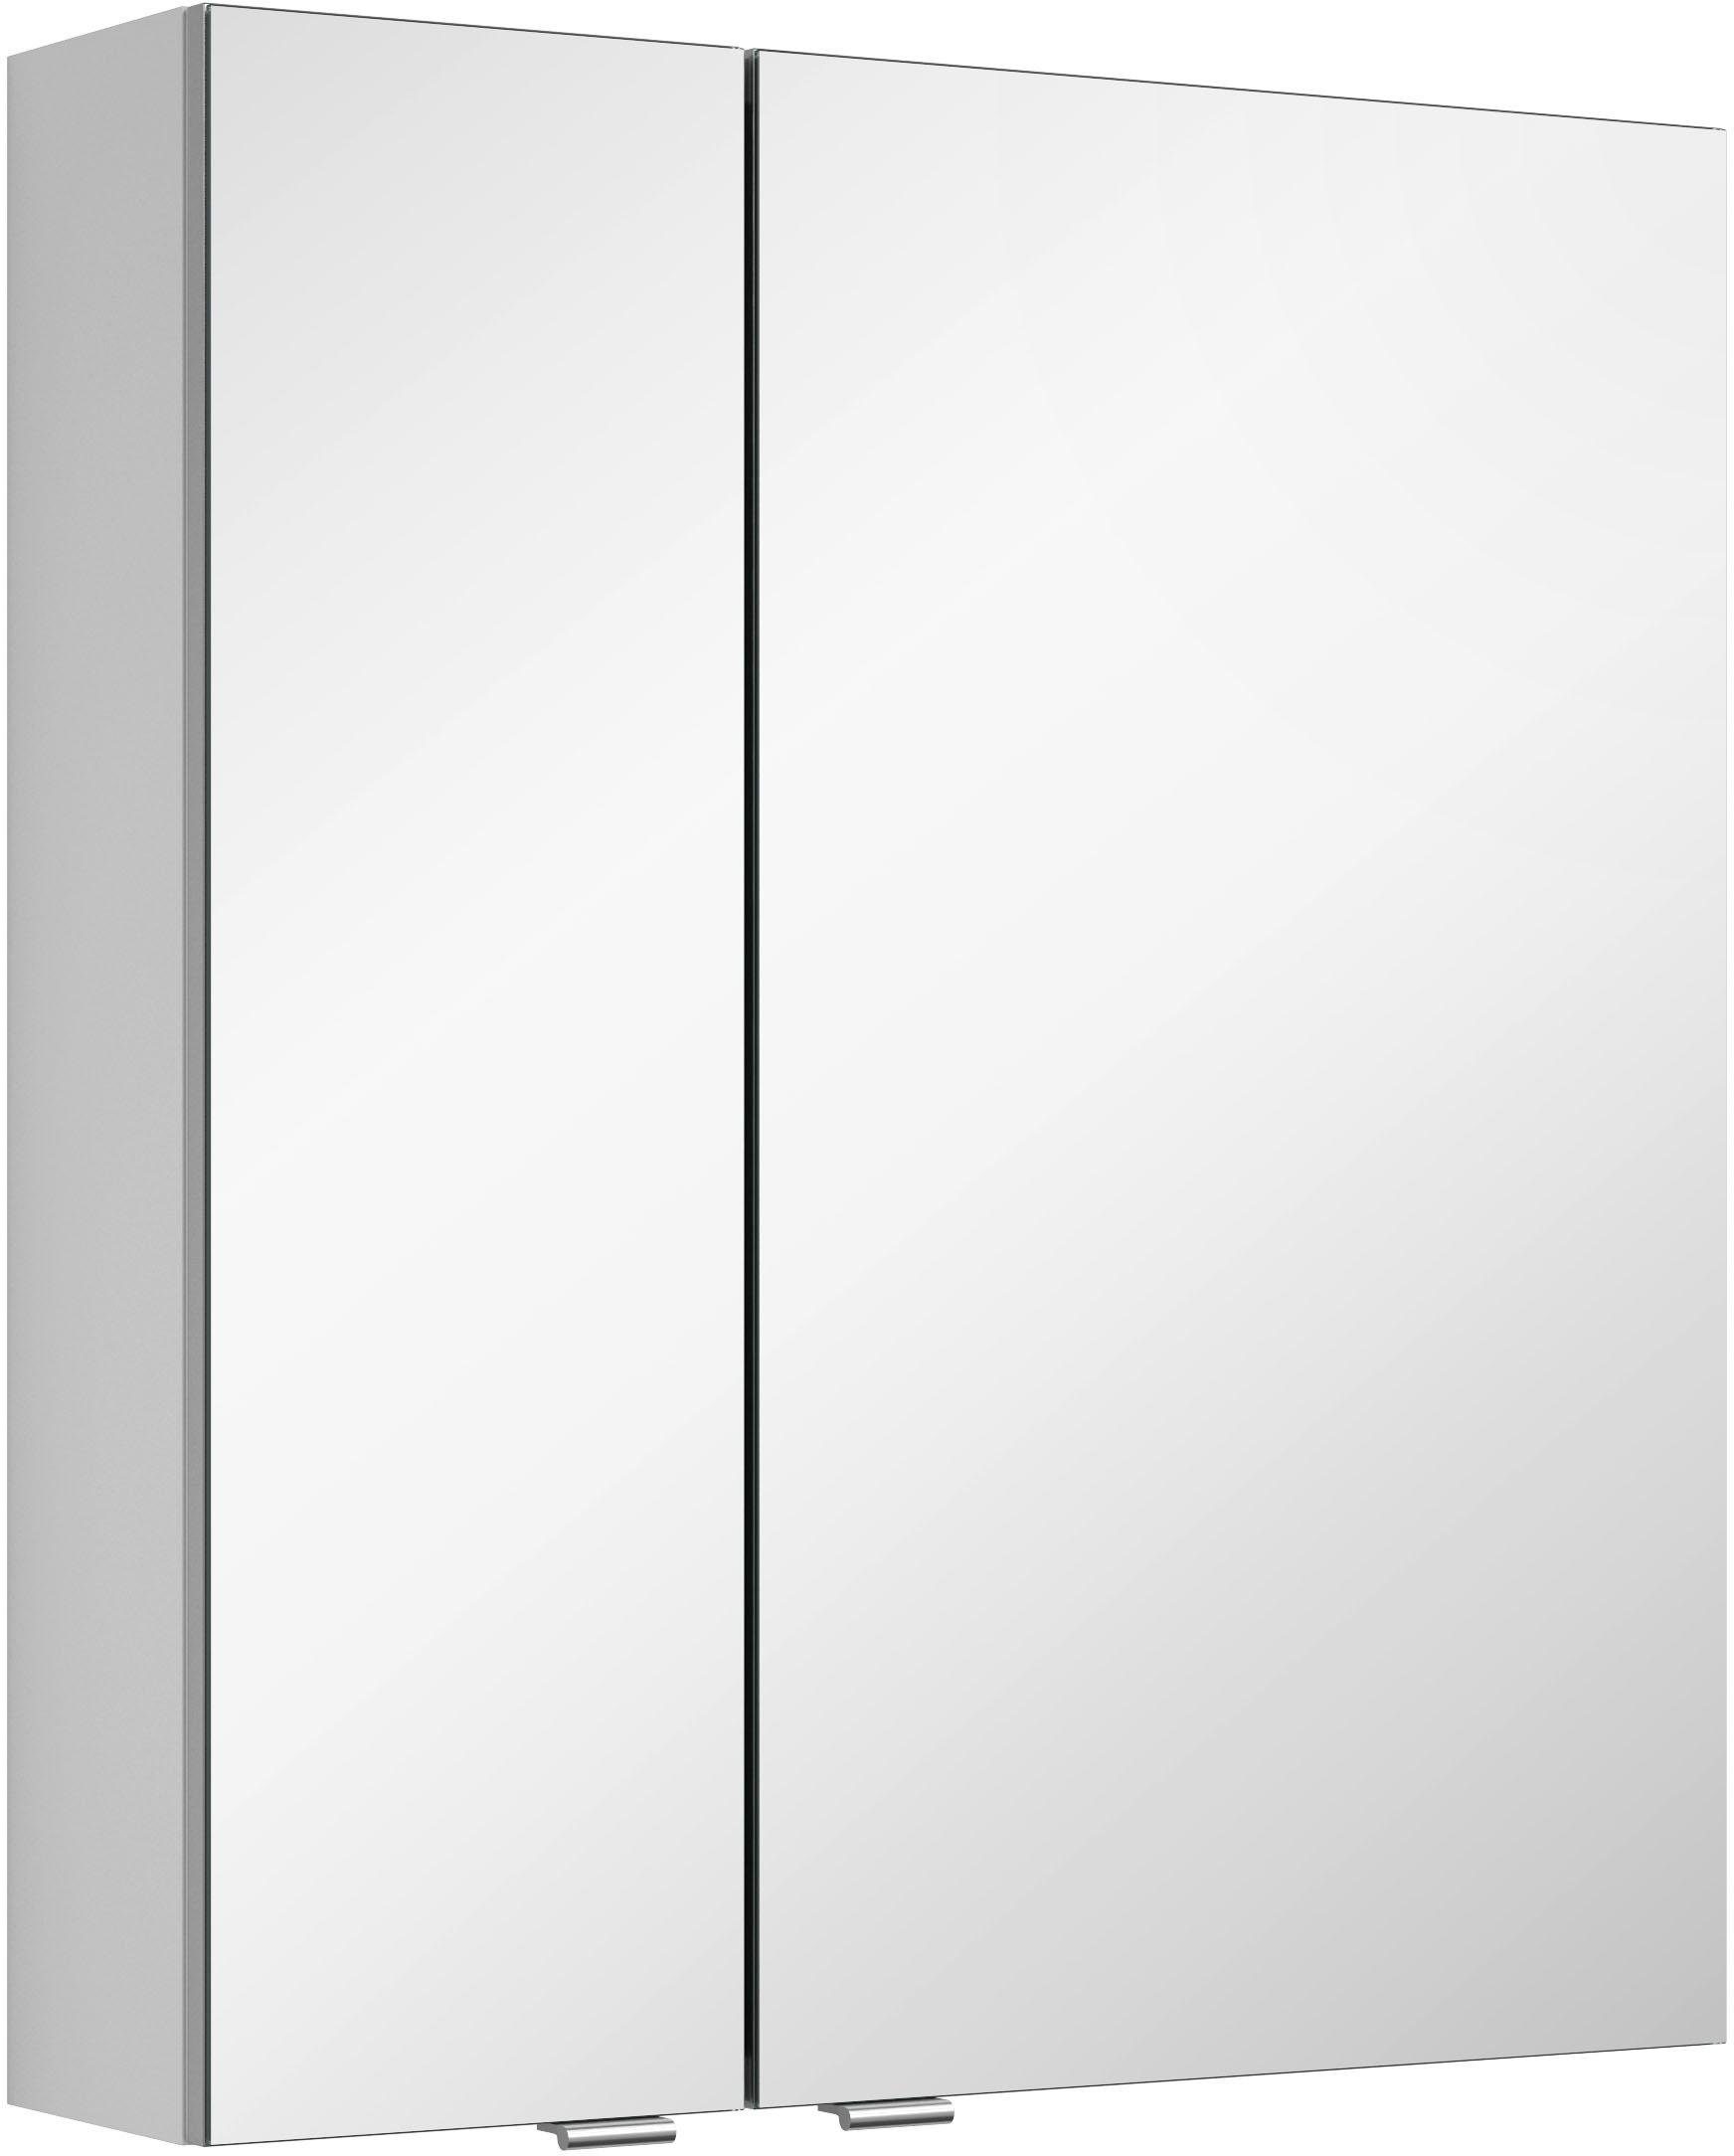 MARLIN Spiegelschrank 3980 mit doppelseitig verspiegelten Türen, vormontiert